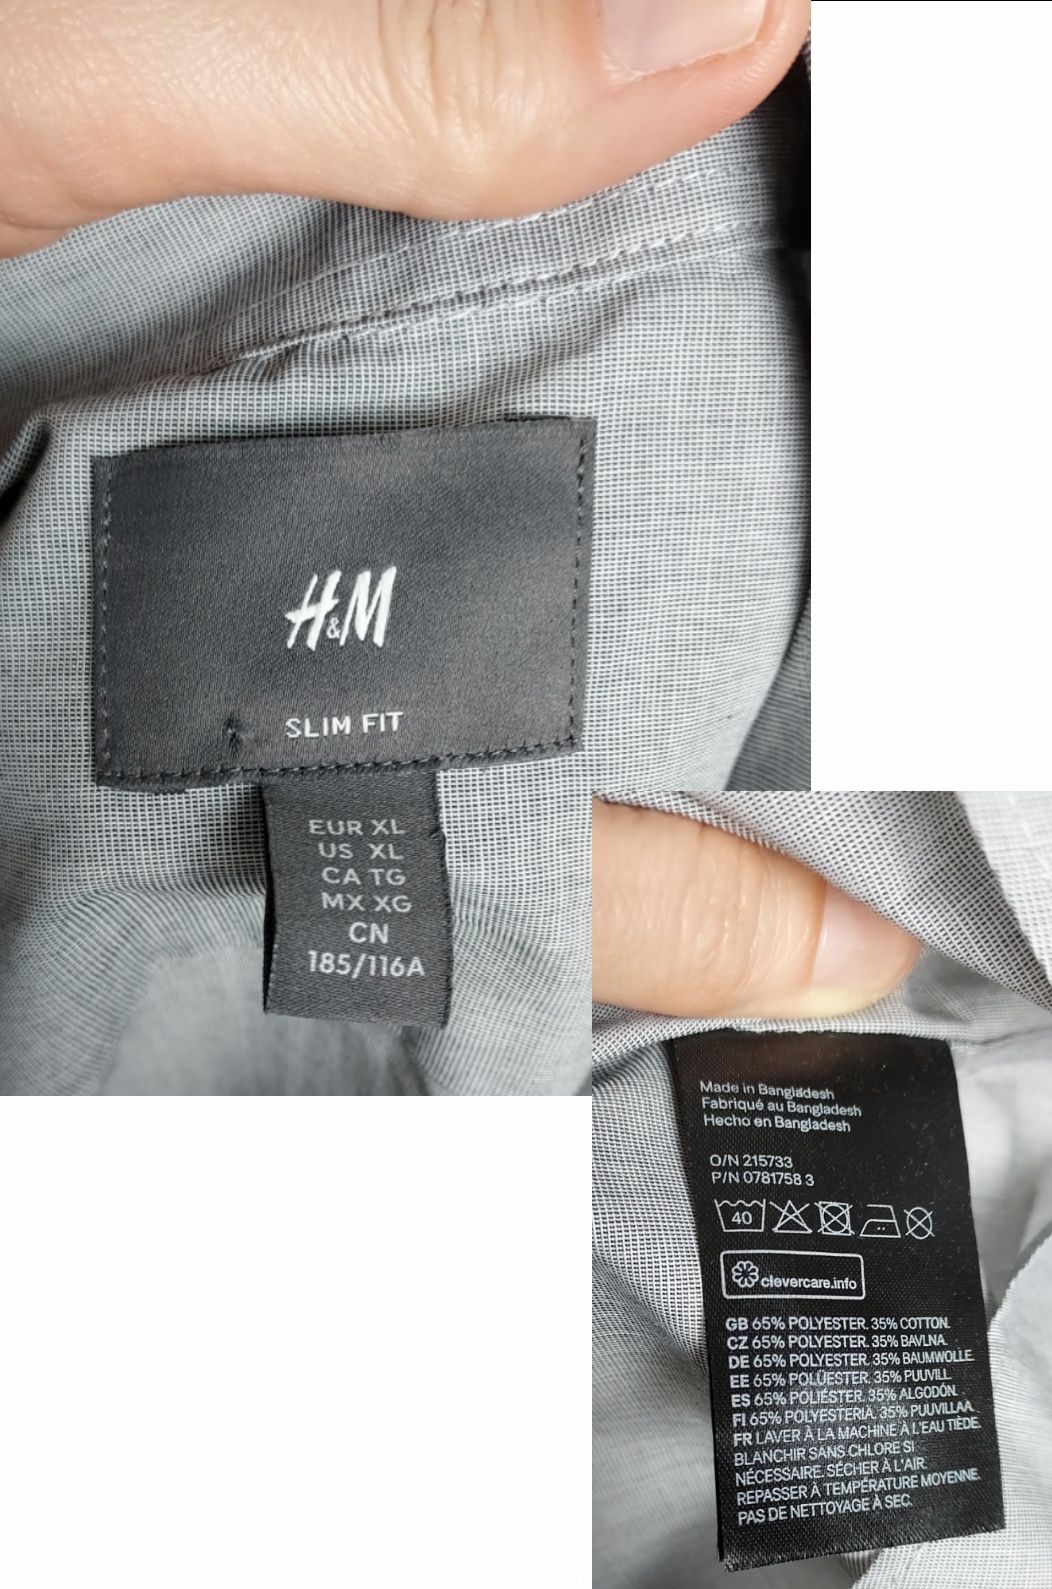 H&M_nowa męska koszula z długimi rękawami Slim fit_XL